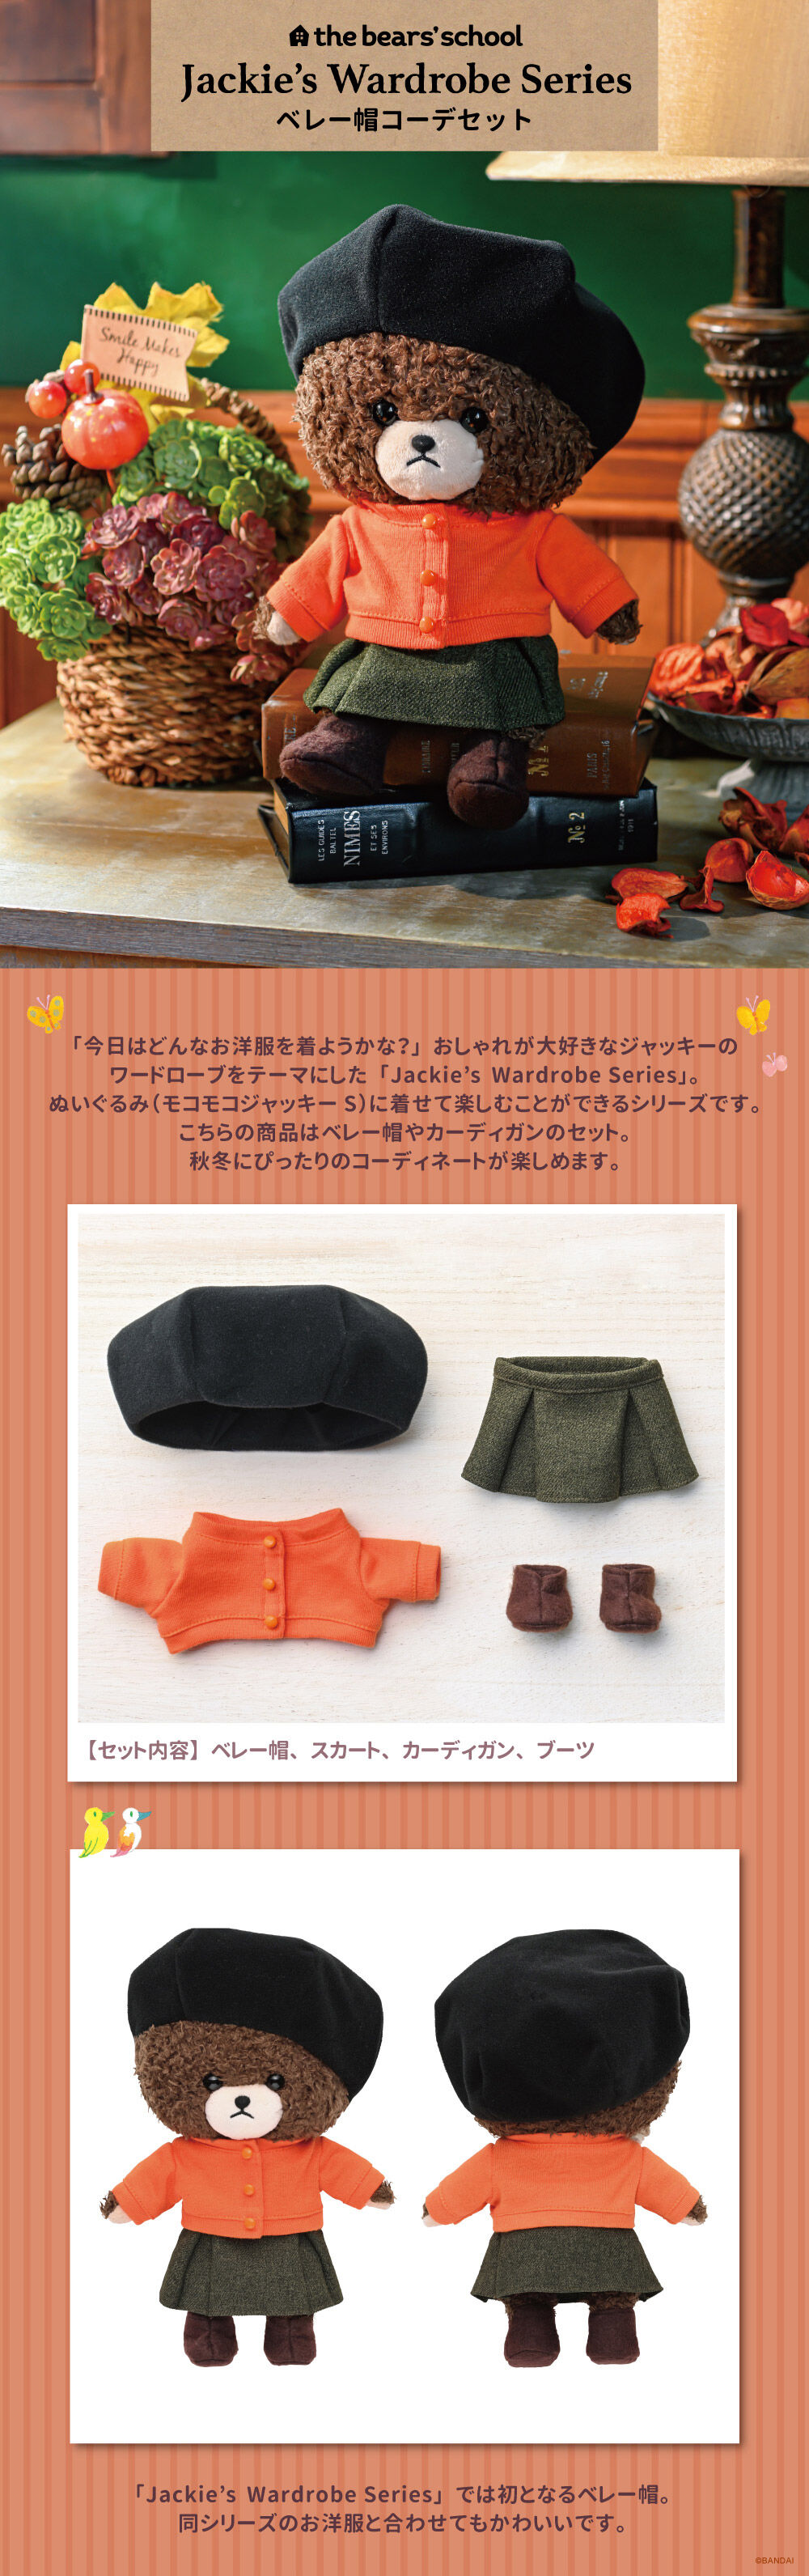 くまのがっこう Jackie's Wardrobe Series ベレー帽コーデセット | くまのがっこう おもちゃ・キャラクター玩具 |  バンダイナムコグループ公式通販サイト